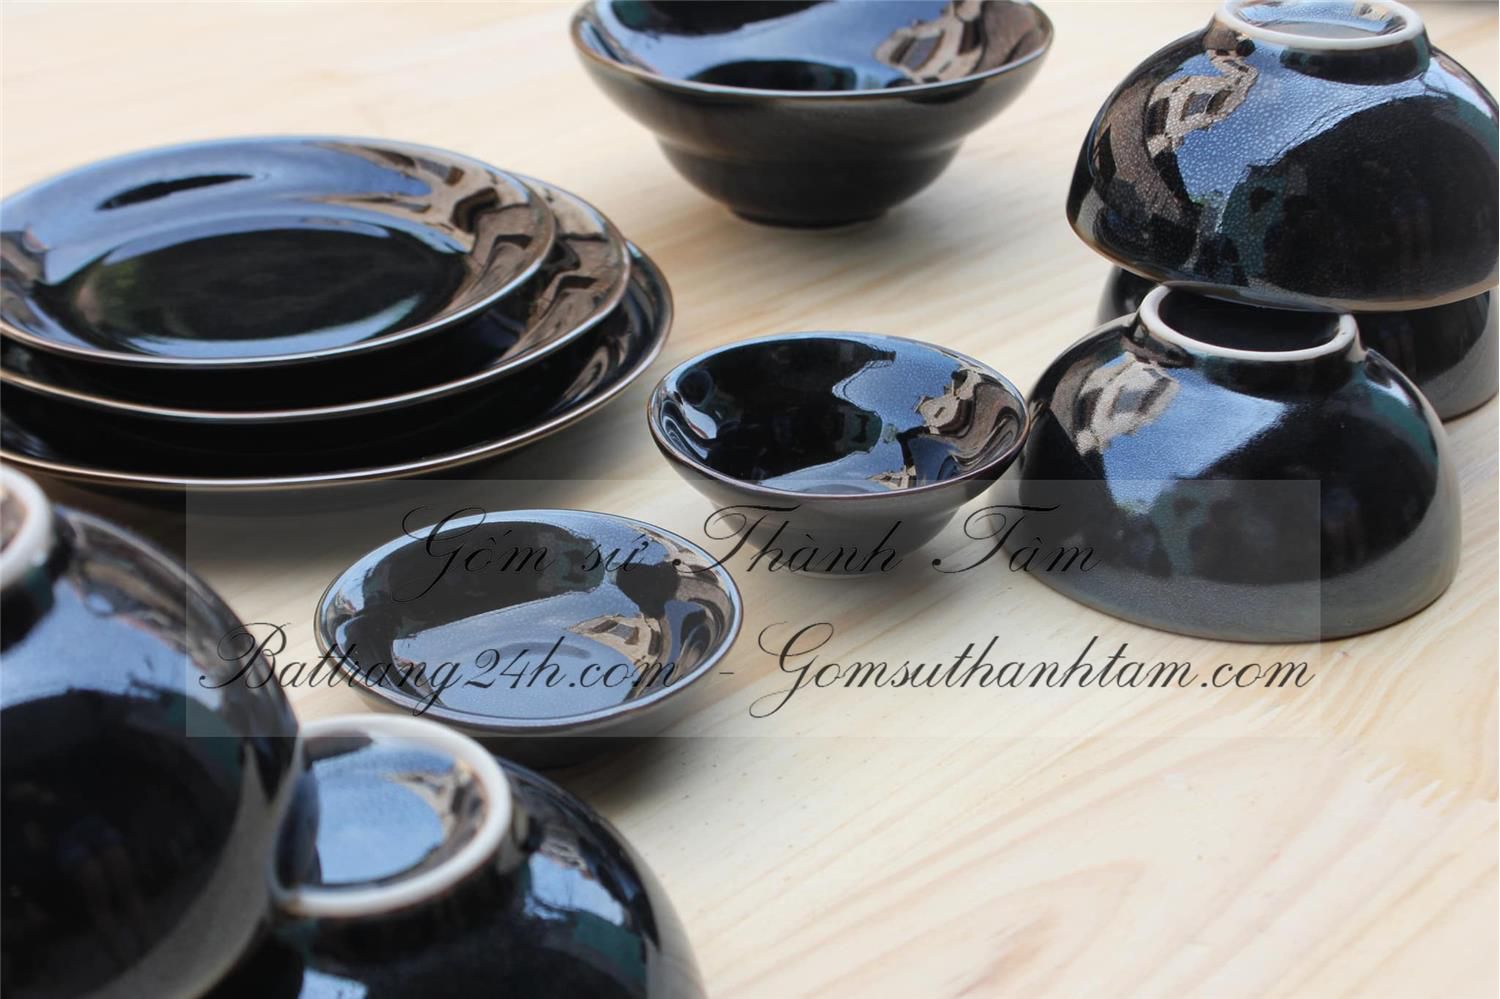 Tổng hợp mẫu bộ bát đĩa gốm sứ Bát Tràng màu men đen bóng cao cấp, bộ bát đĩa đựng trong nhà hàng chất lượng giá rẻ nhất